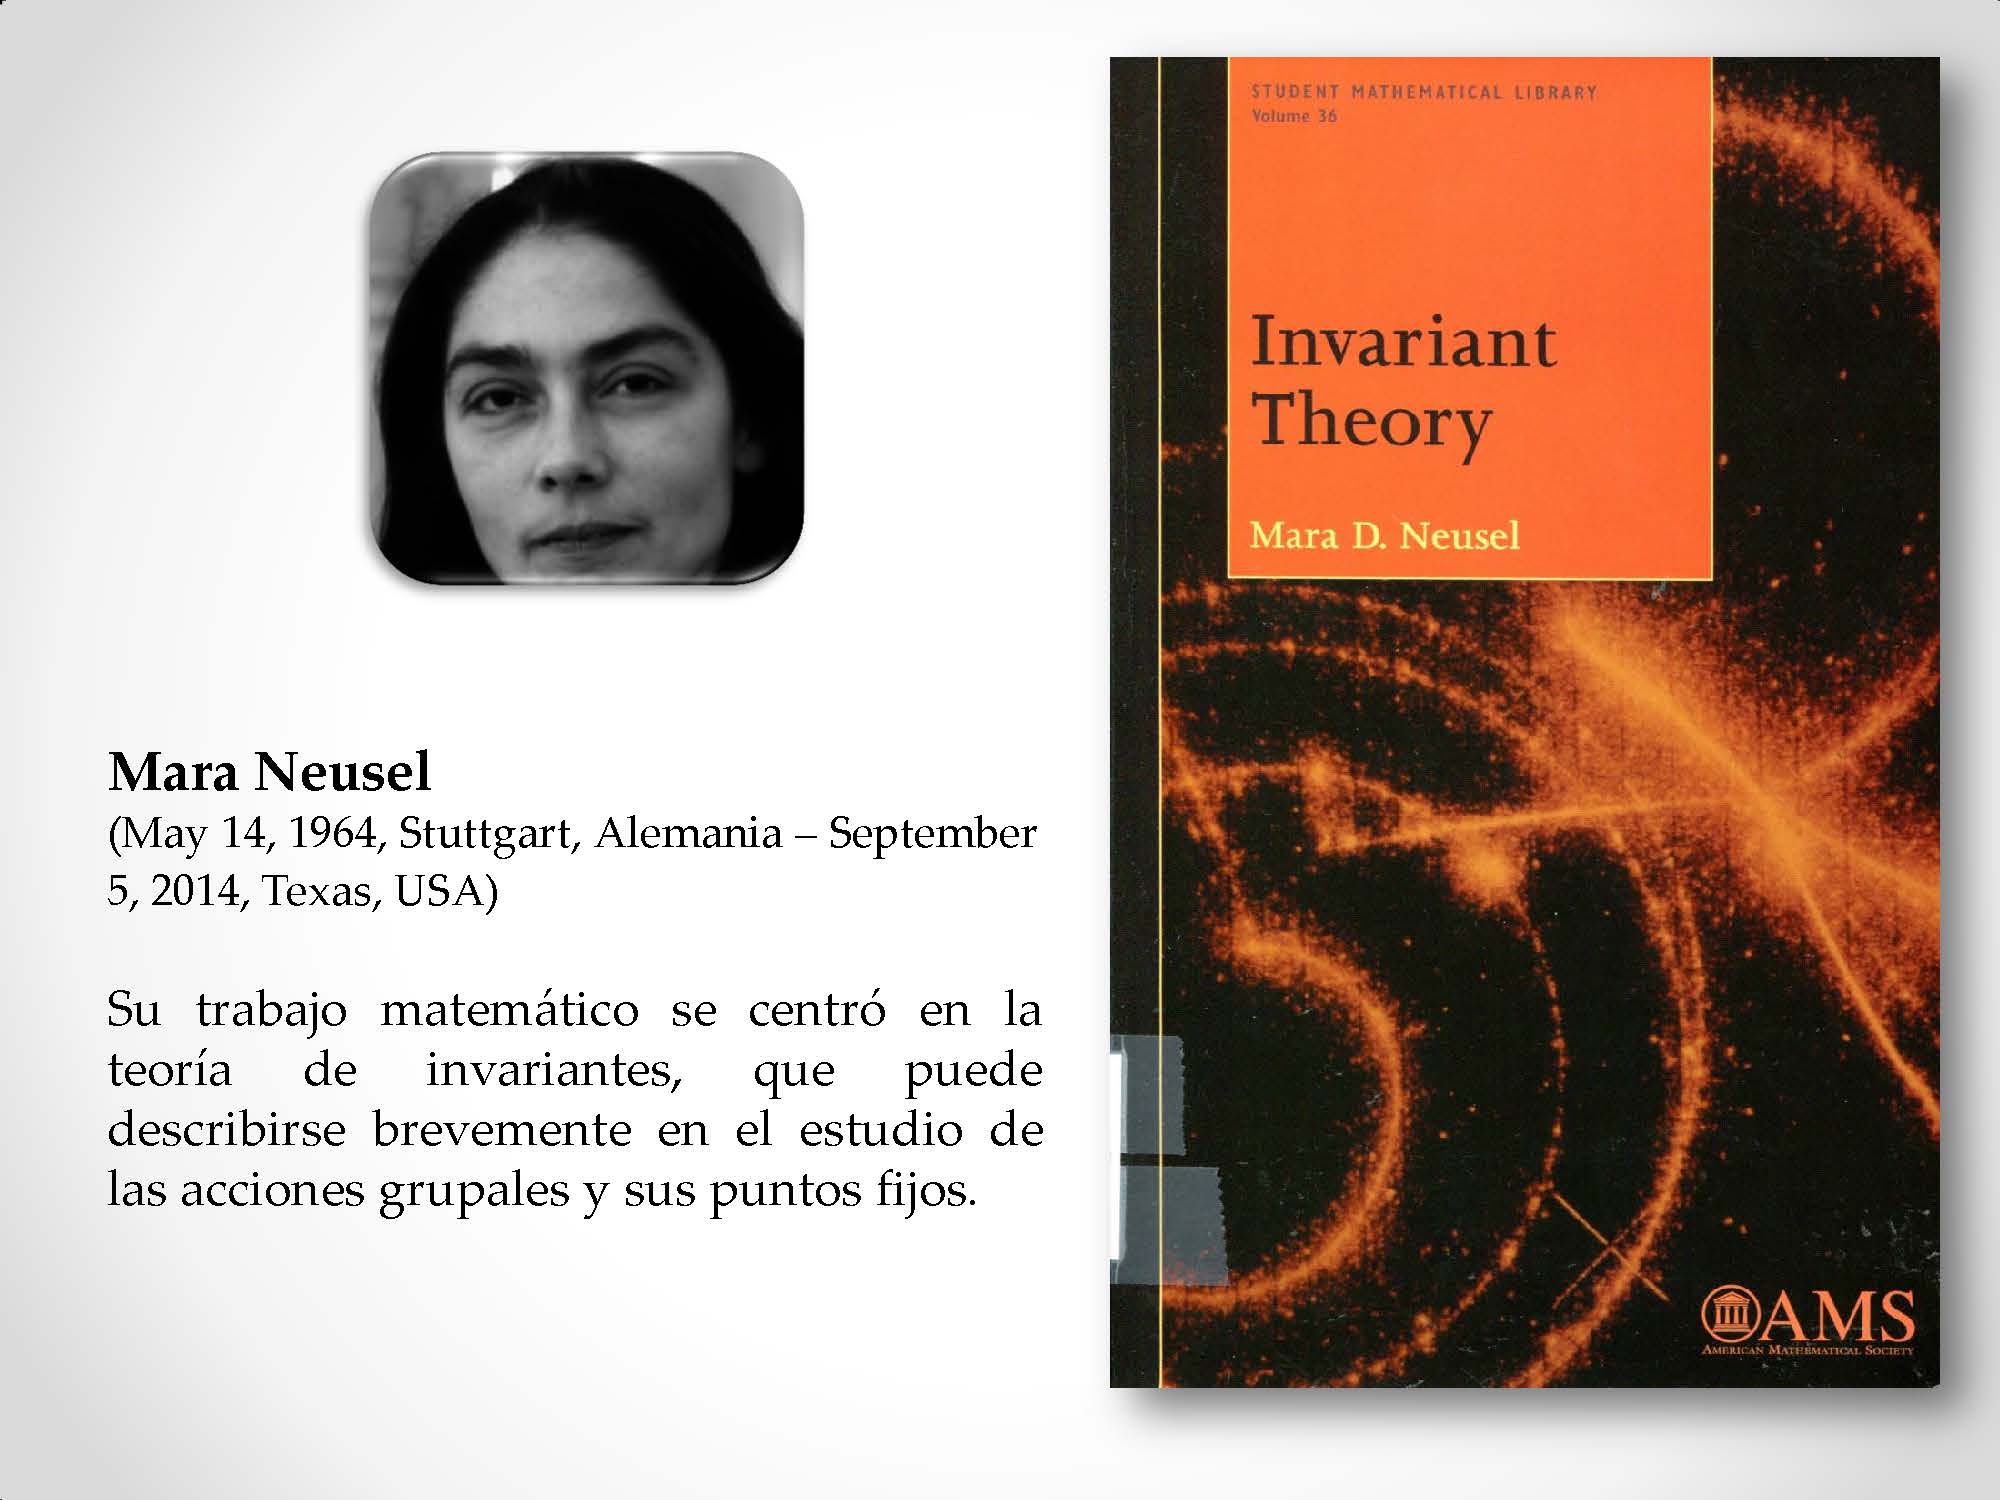 Mara Neusel (May 14, 1964, Stuttgart, Alemania – September 5, 2014, Texas, USA) Su trabajo matemático se centró en la teoría de invariantes, que puede describirse brevemente en el estudio de las acciones grupales y sus puntos fijos.